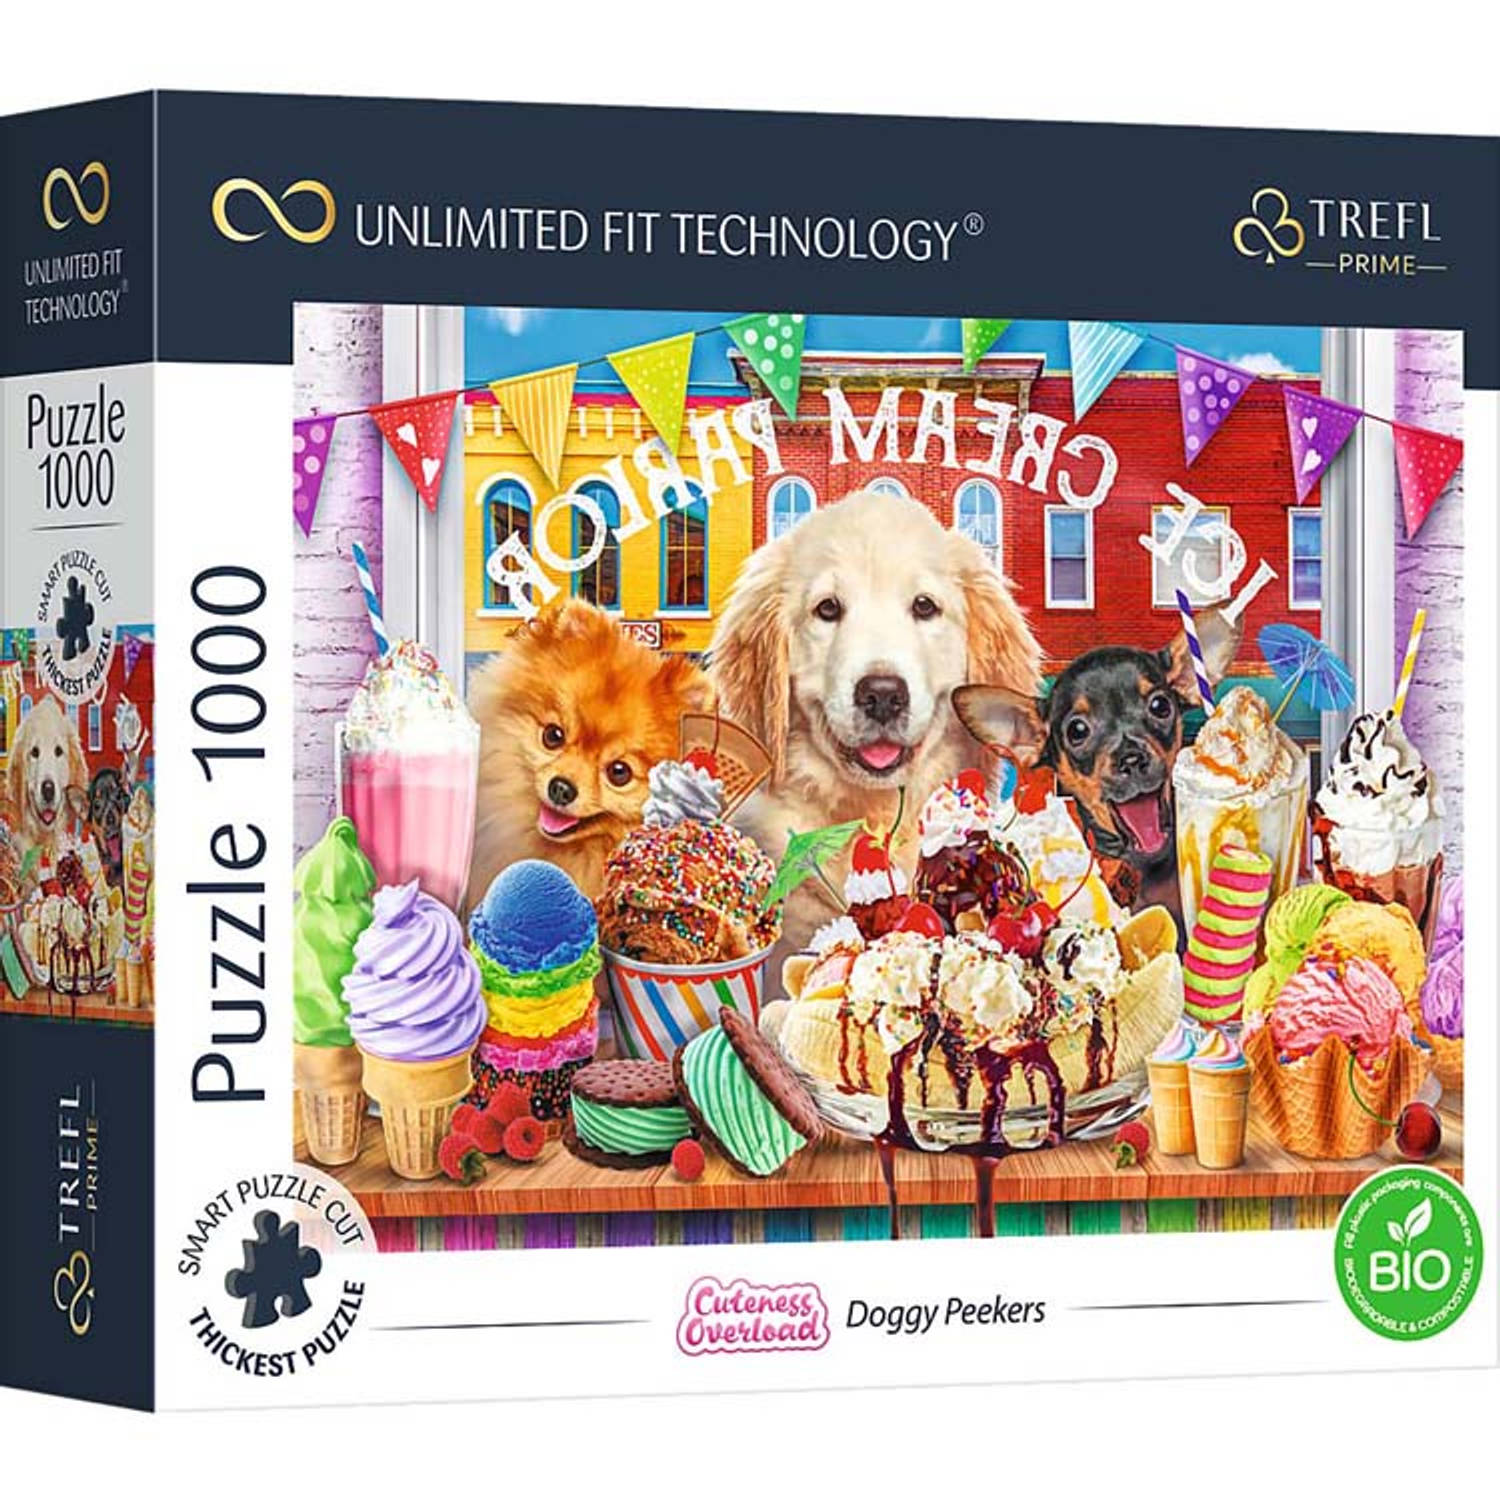 Trefl Prime Glurende Honden puzzel - 1000 stukjes